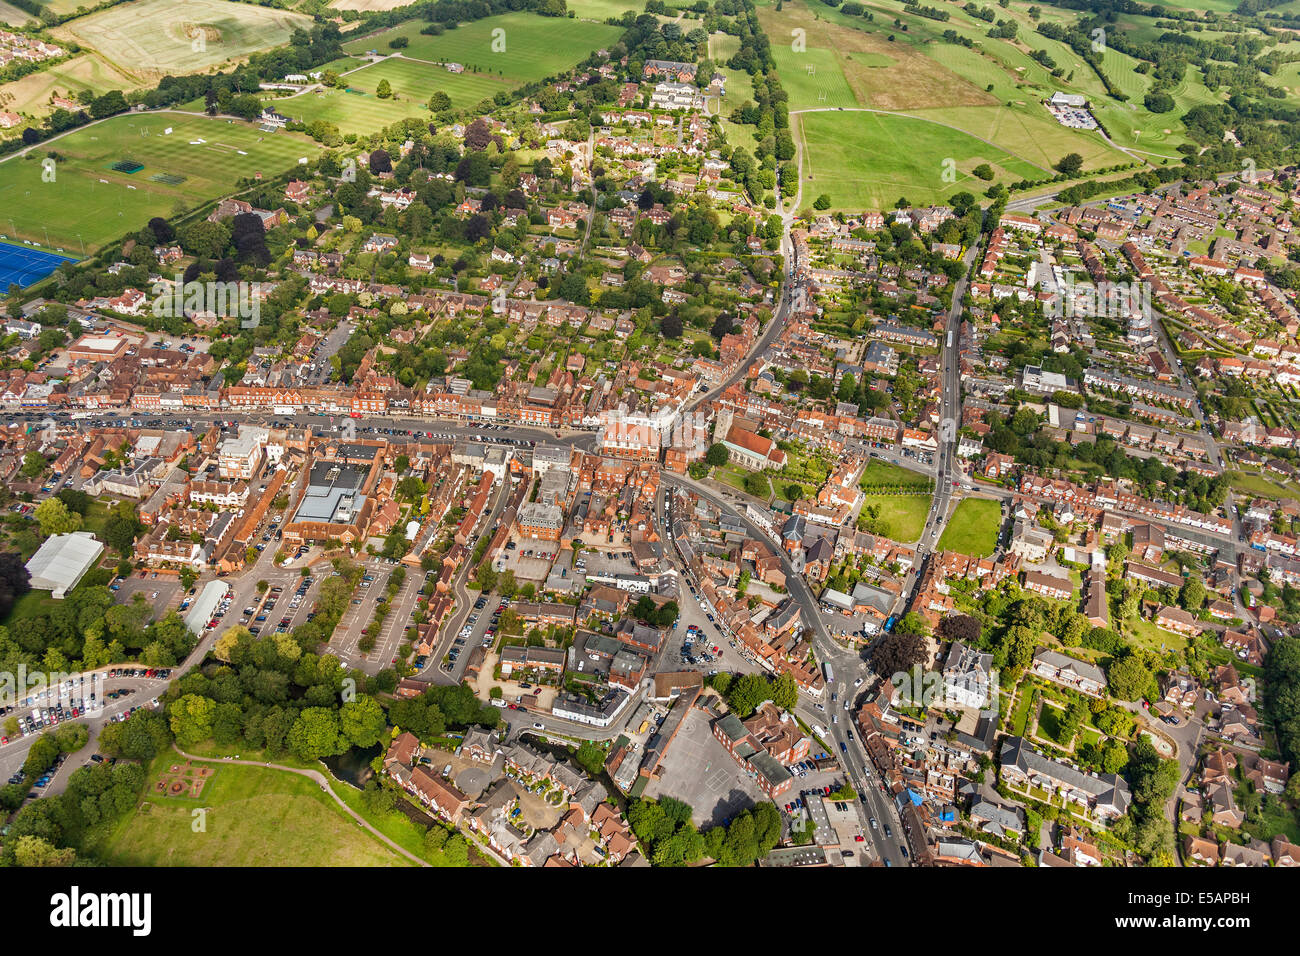 Vista aerea di Marlborough, Wiltshire, Regno Unito con High Street center e la Chiesa Parrocchiale di Santa Maria appena a destra del centro. JMH6217 Foto Stock